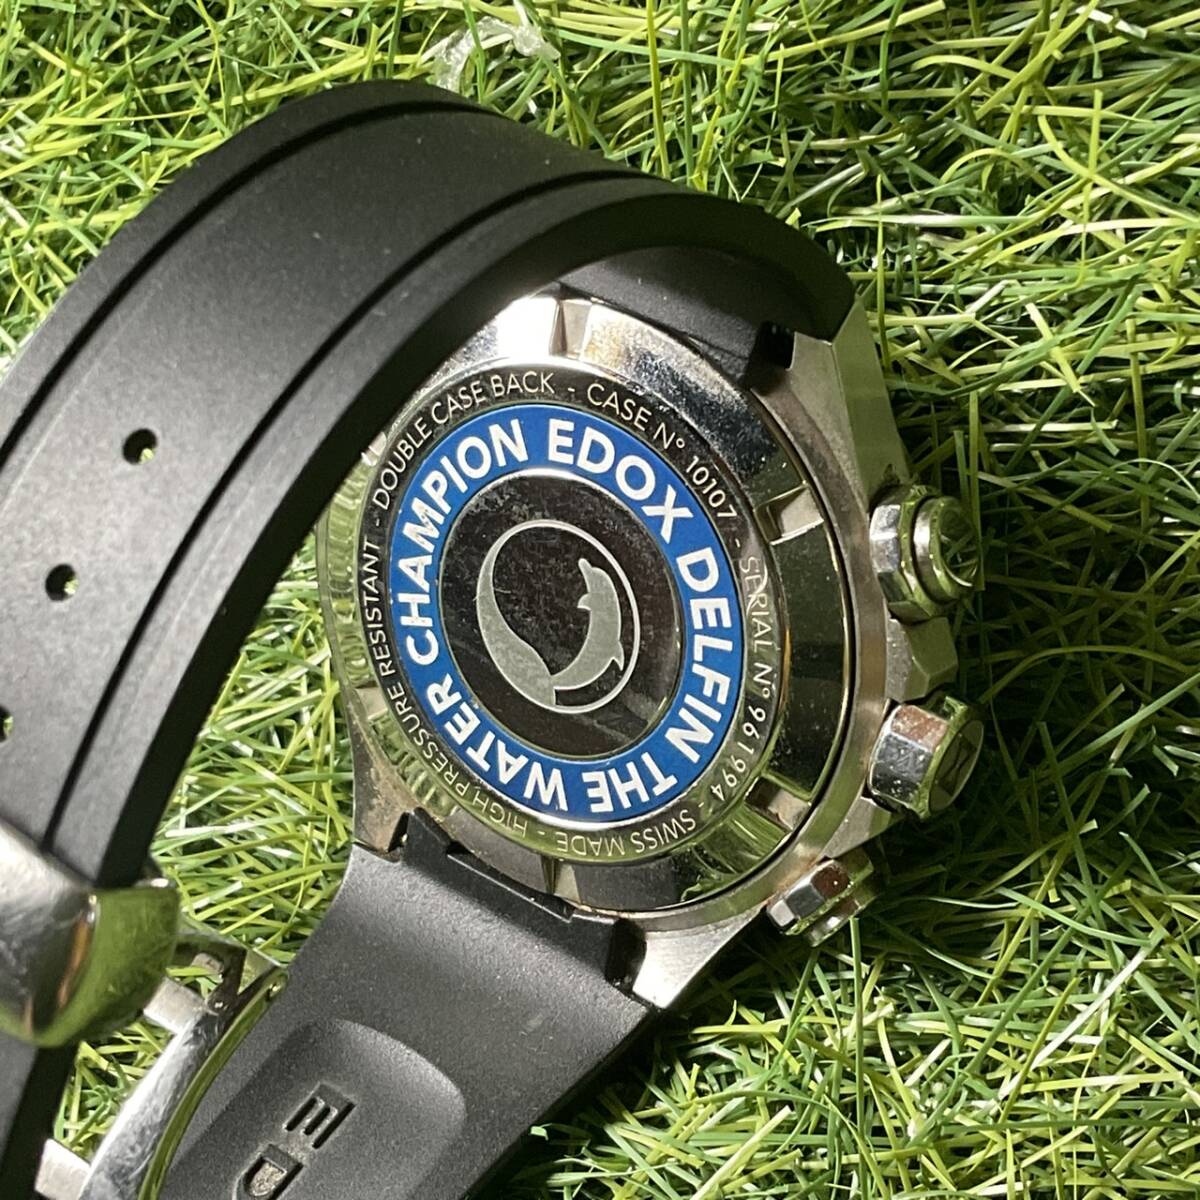  почти не использовался EDOX Ed ks Delphi n хронограф мужские наручные часы коробка инструкция имеется 10108-3-AIN серебряный 